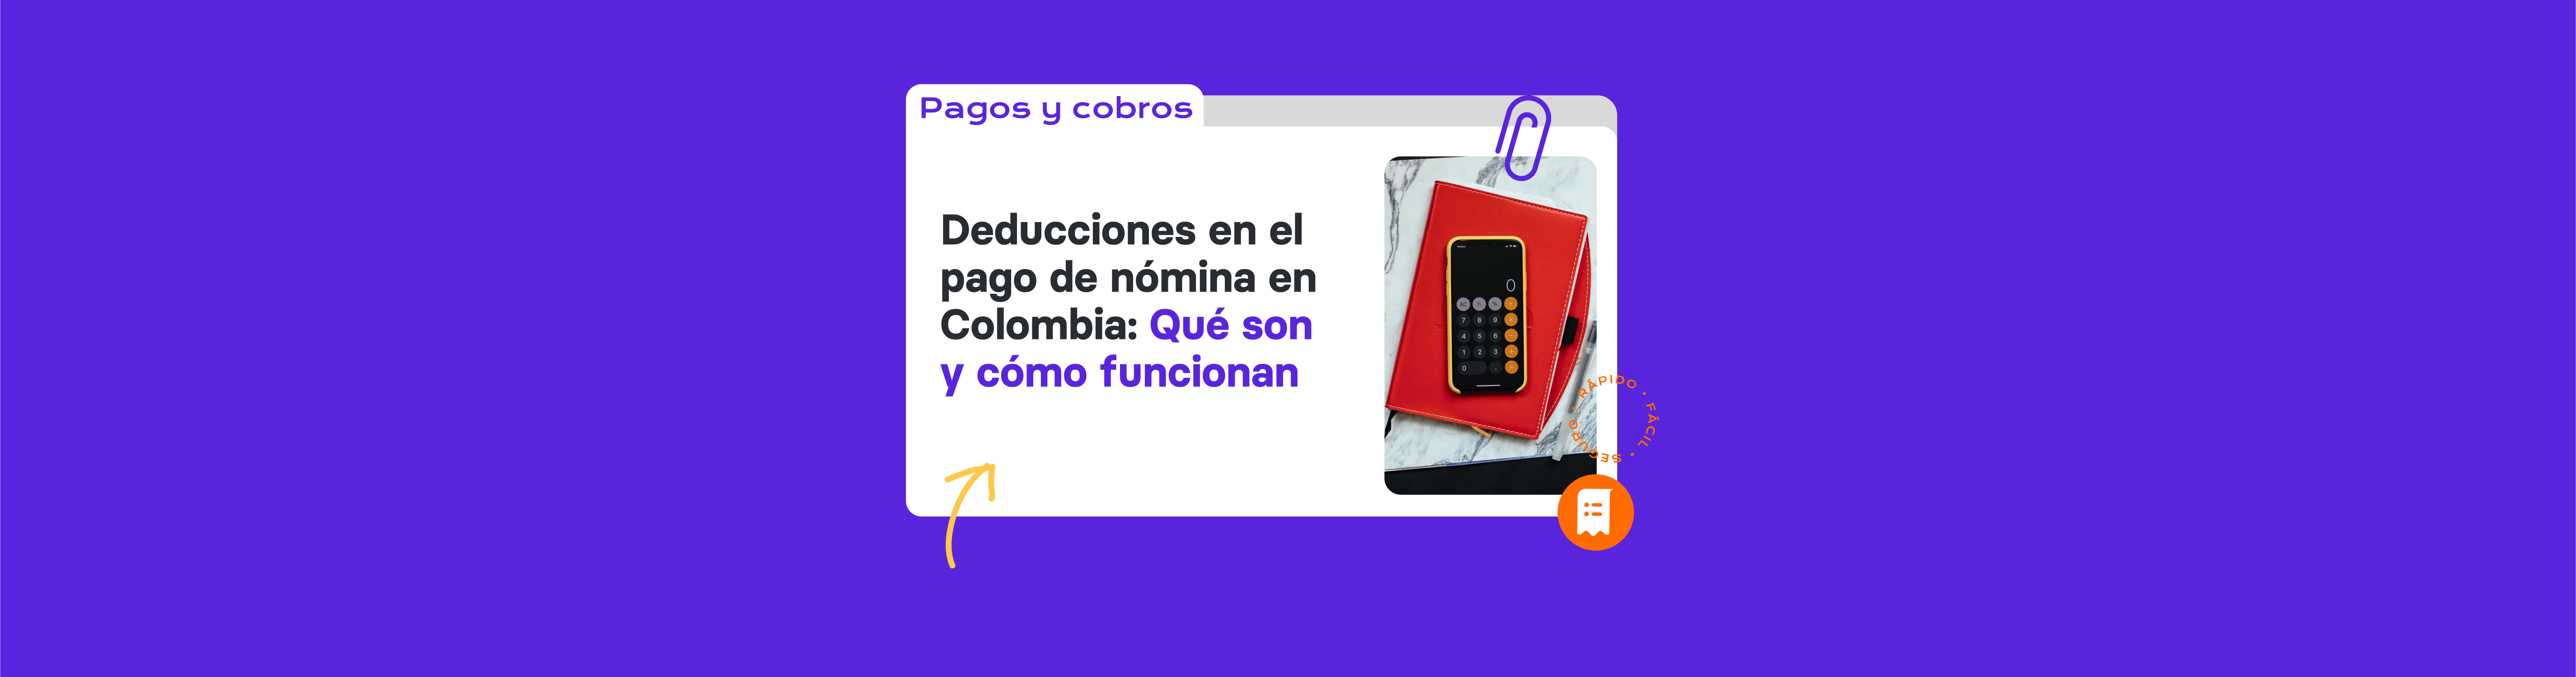 Deducciones en el pago de nómina en Colombia: Qué son y cómo funcionan